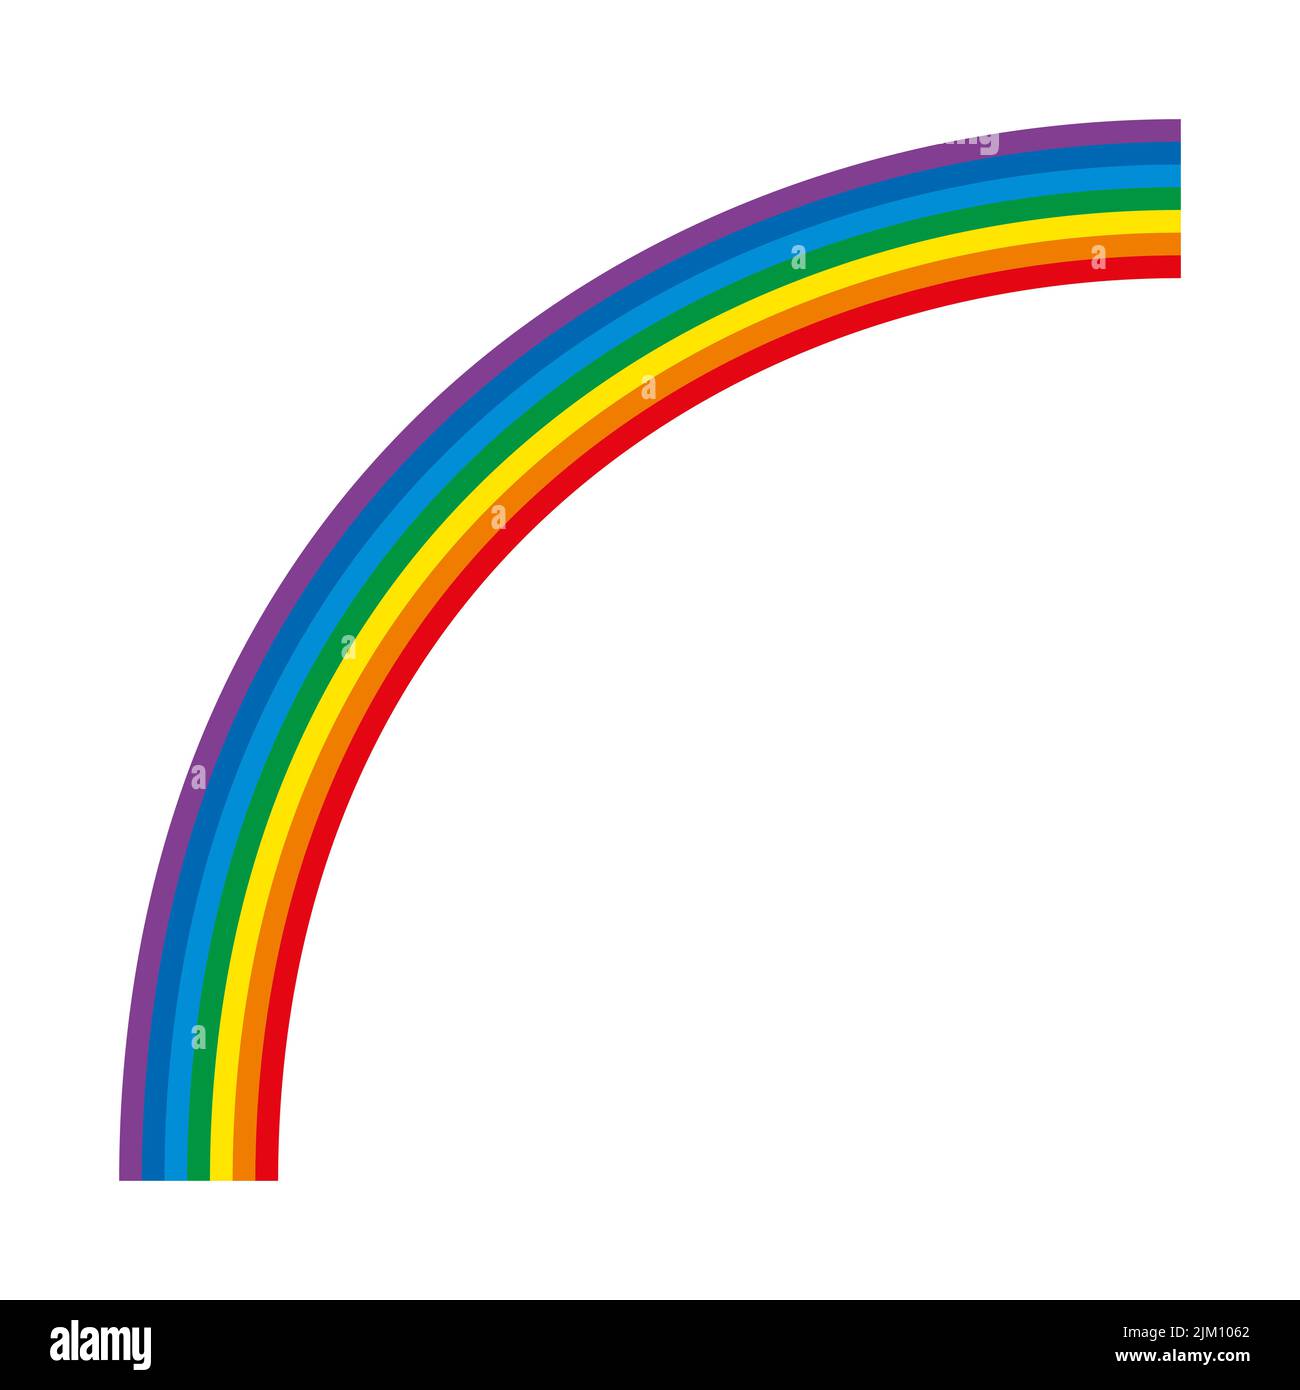 Regenbogen, mehrfarbiger Viertelkreis. Bogen von 7 gebogenen Farbbalken mit dem Spektrum des sichtbaren Lichts. Rot, orange, gelb, grün, cyan, Blau, violett. Stockfoto